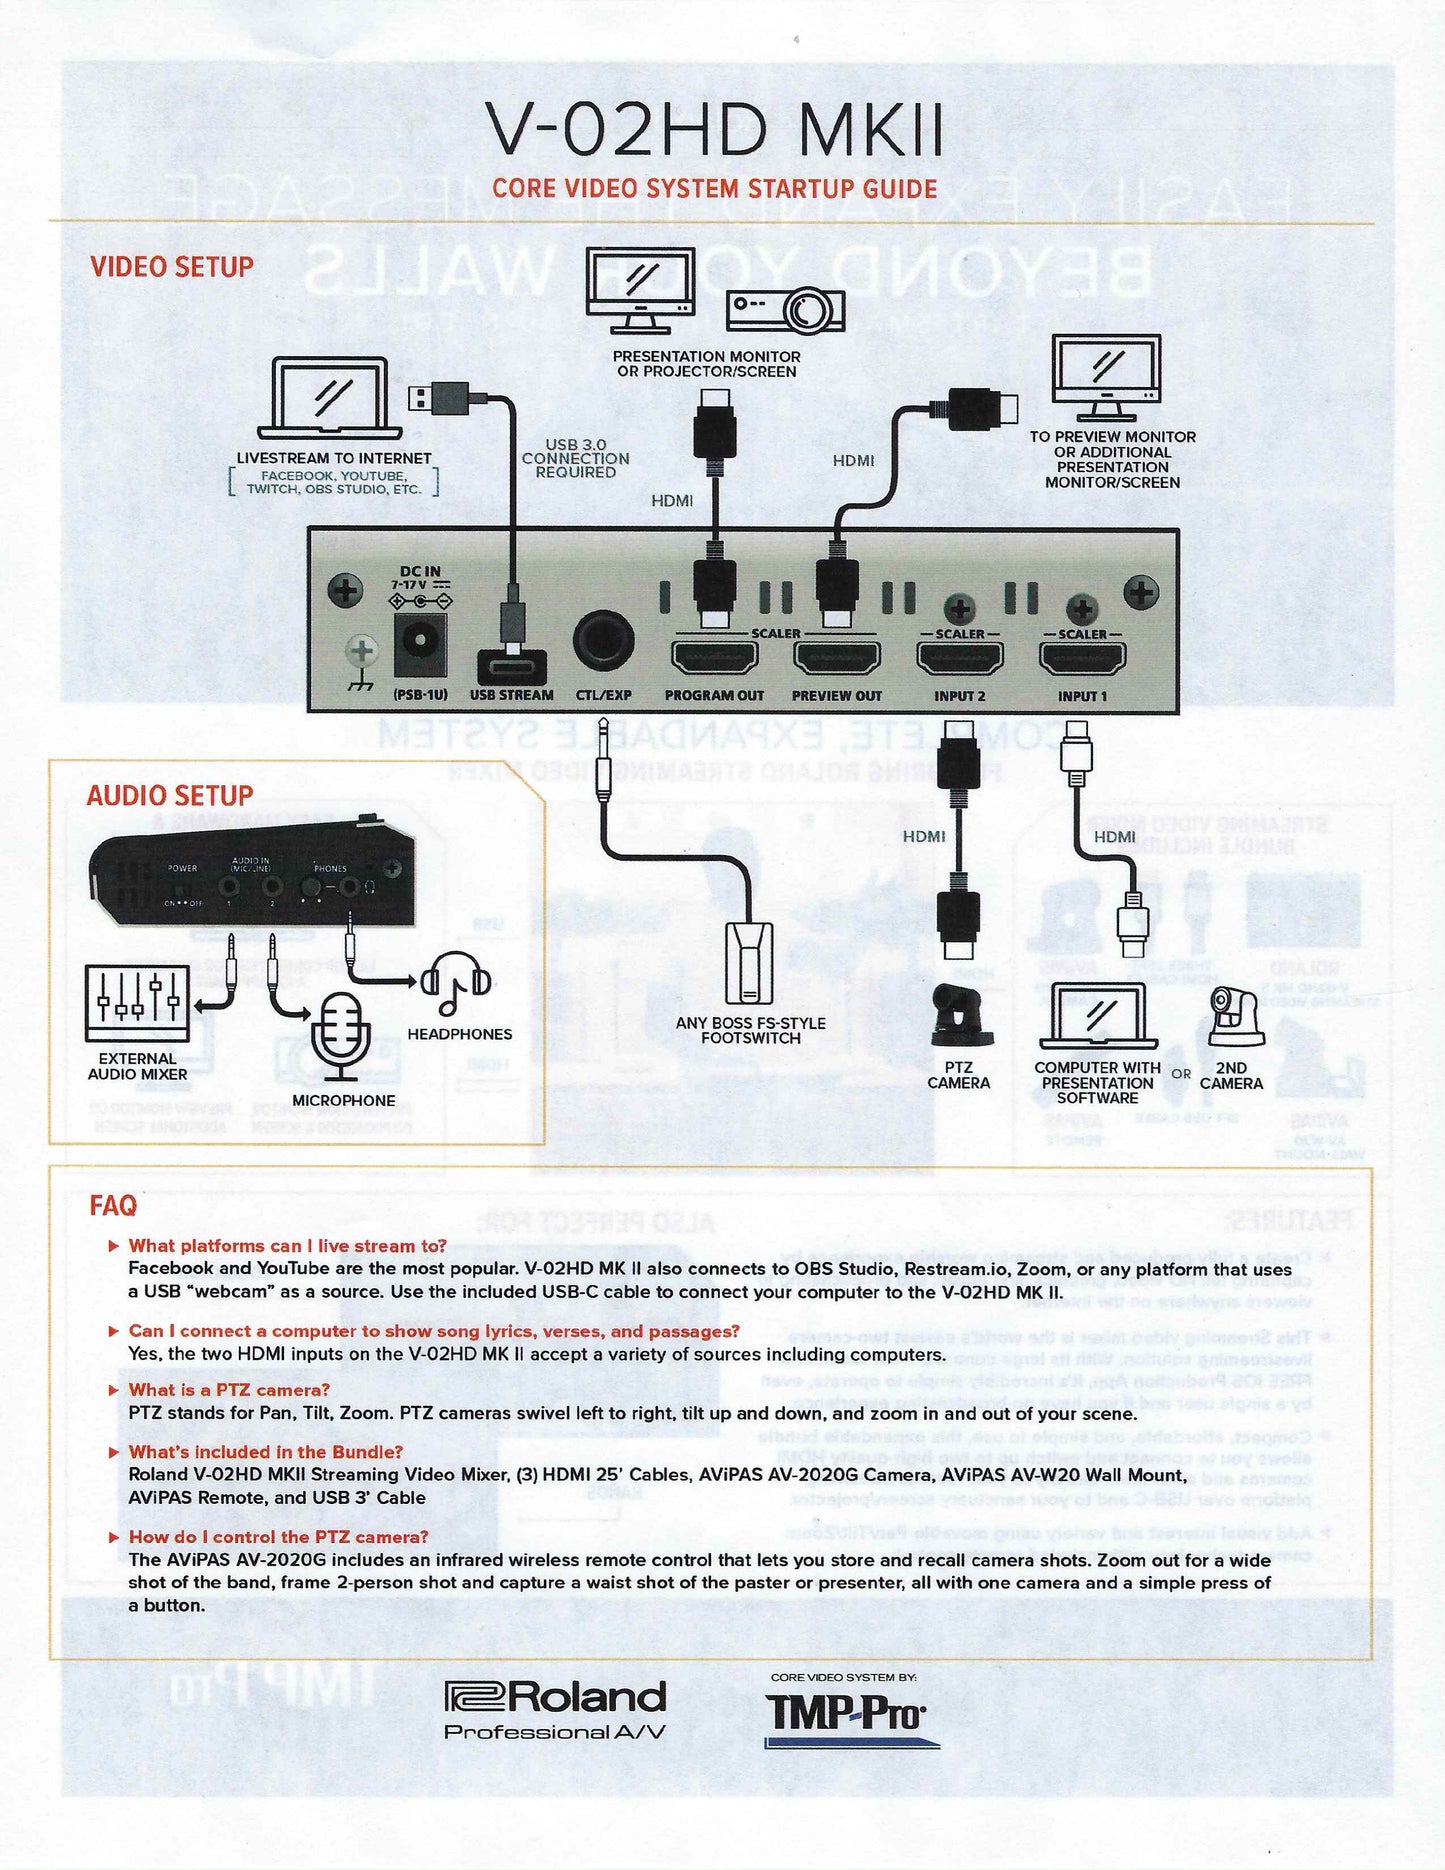 Roland PTZ-1W-V02 Single PTZ Camera & Mixer Video Streaming Bundled Solution White V-02HD AV-2020G